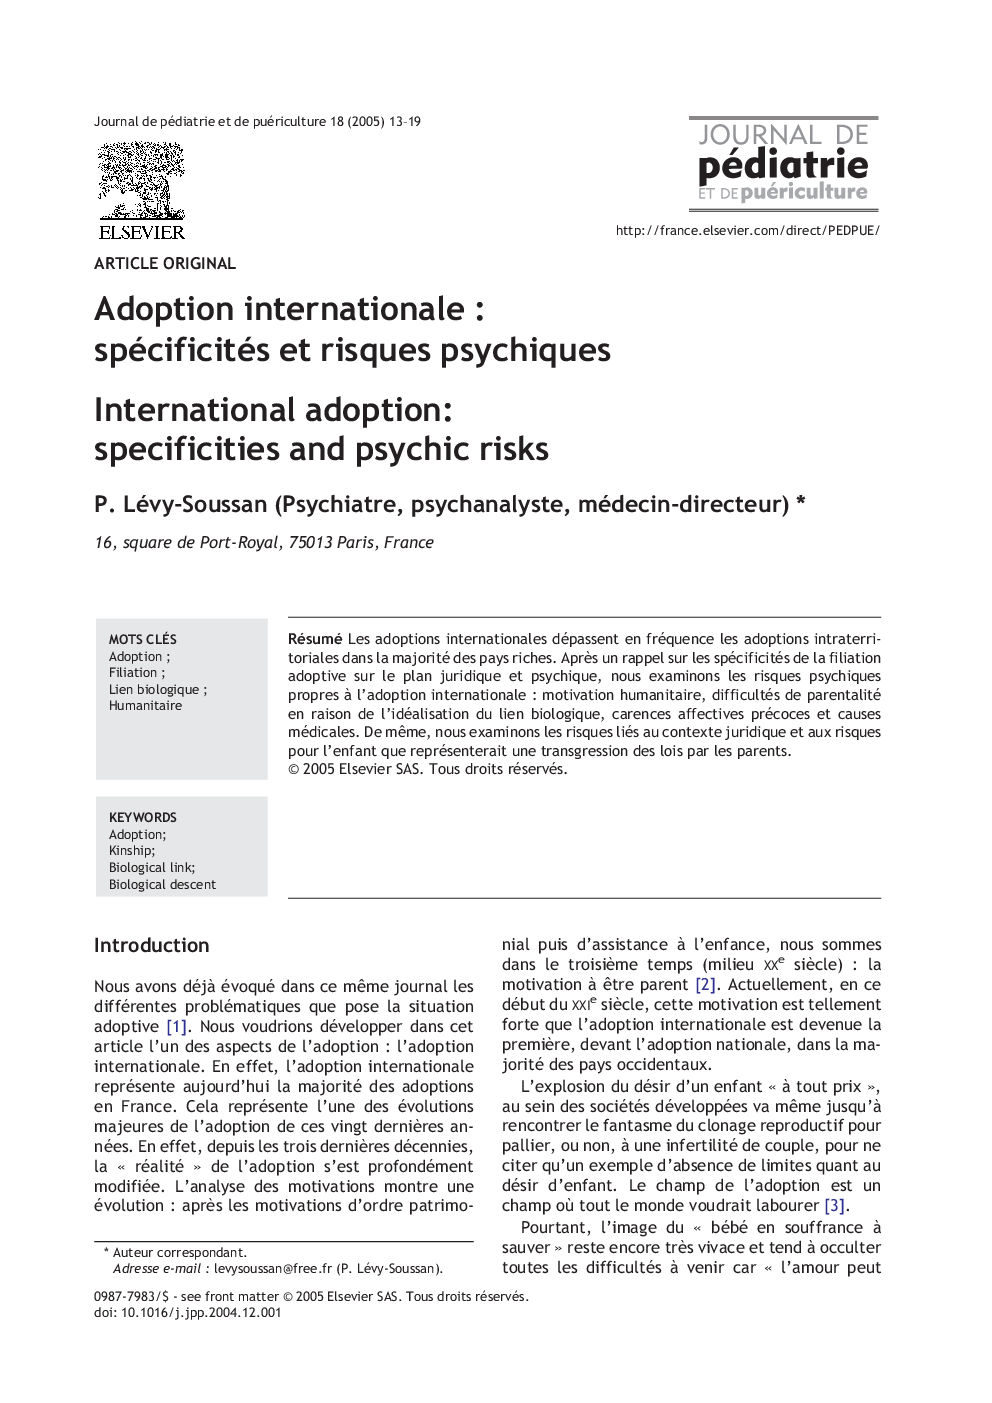 Adoption internationale : spécificités et risques psychiques